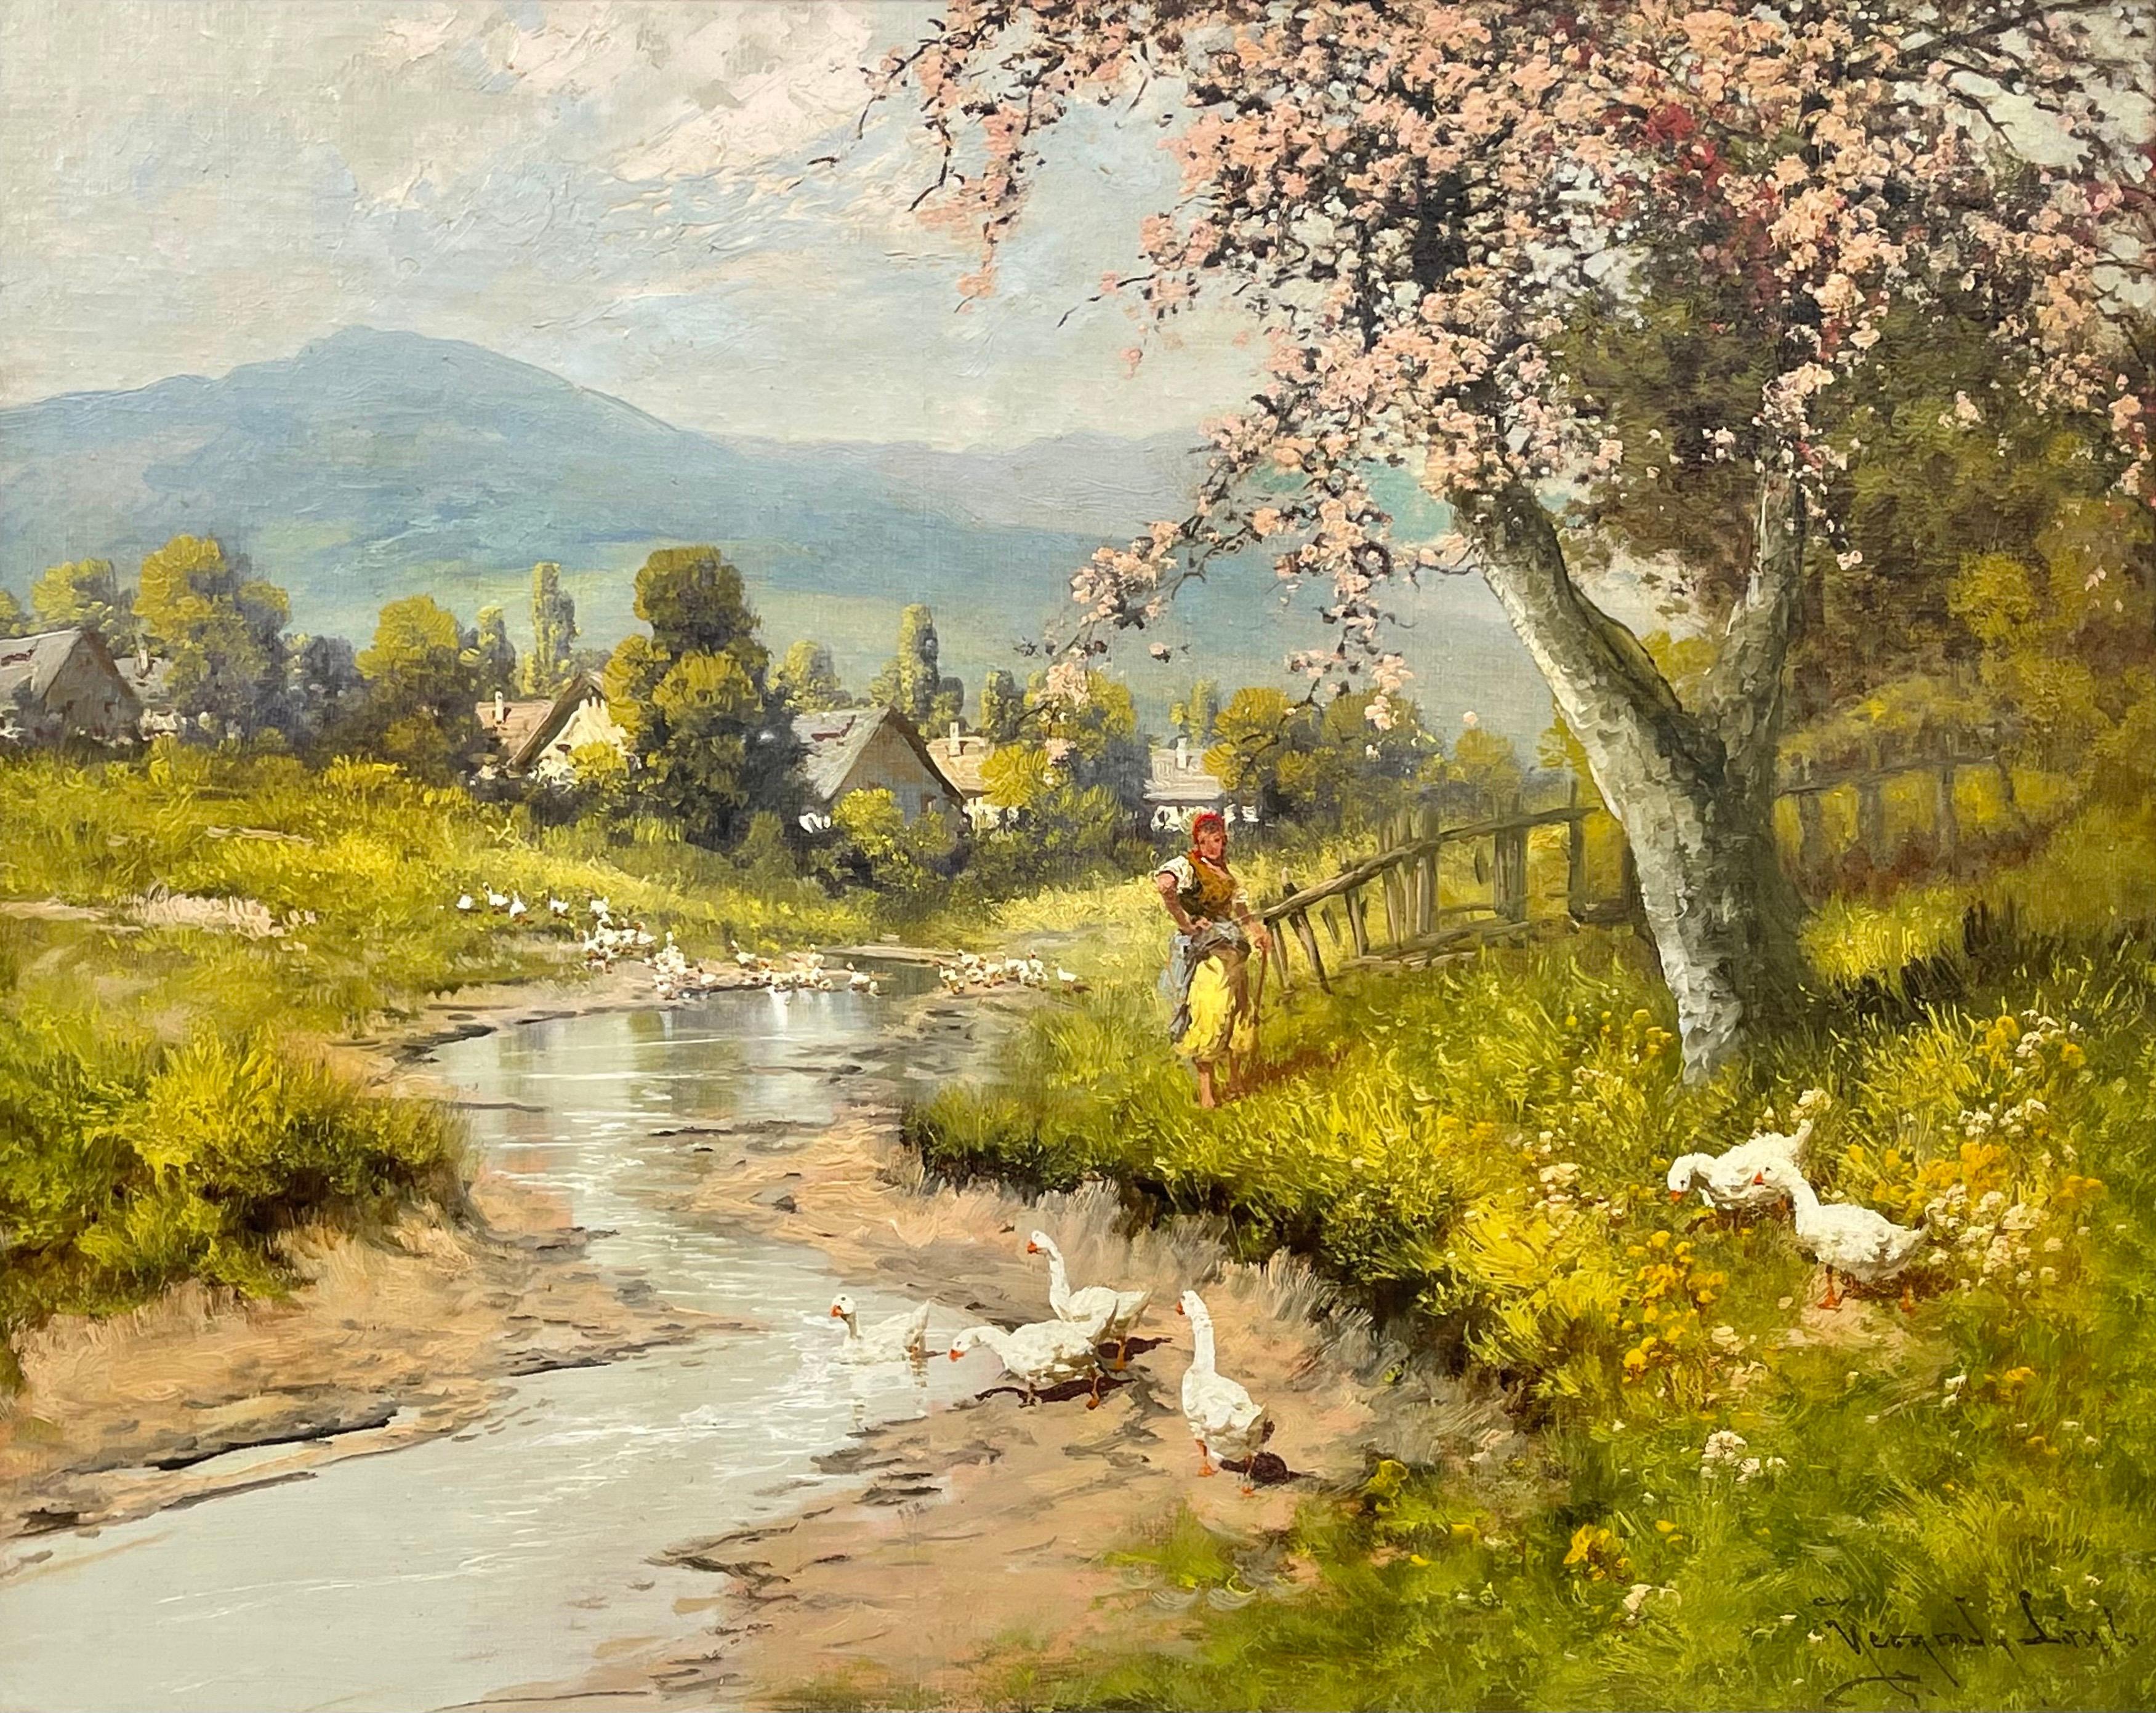 Flusslandschaft auf dem Land mit Kirschbaumblüte, weiblicher Figur und Gänsen von Laszlo Neogrady (1896-1962), einem Künstler des frühen 20. Jahrhunderts. Eingerahmt in eine hochwertige, weiße, schäbig-schicke, zeitgenössische Holzleiste.

Kunst